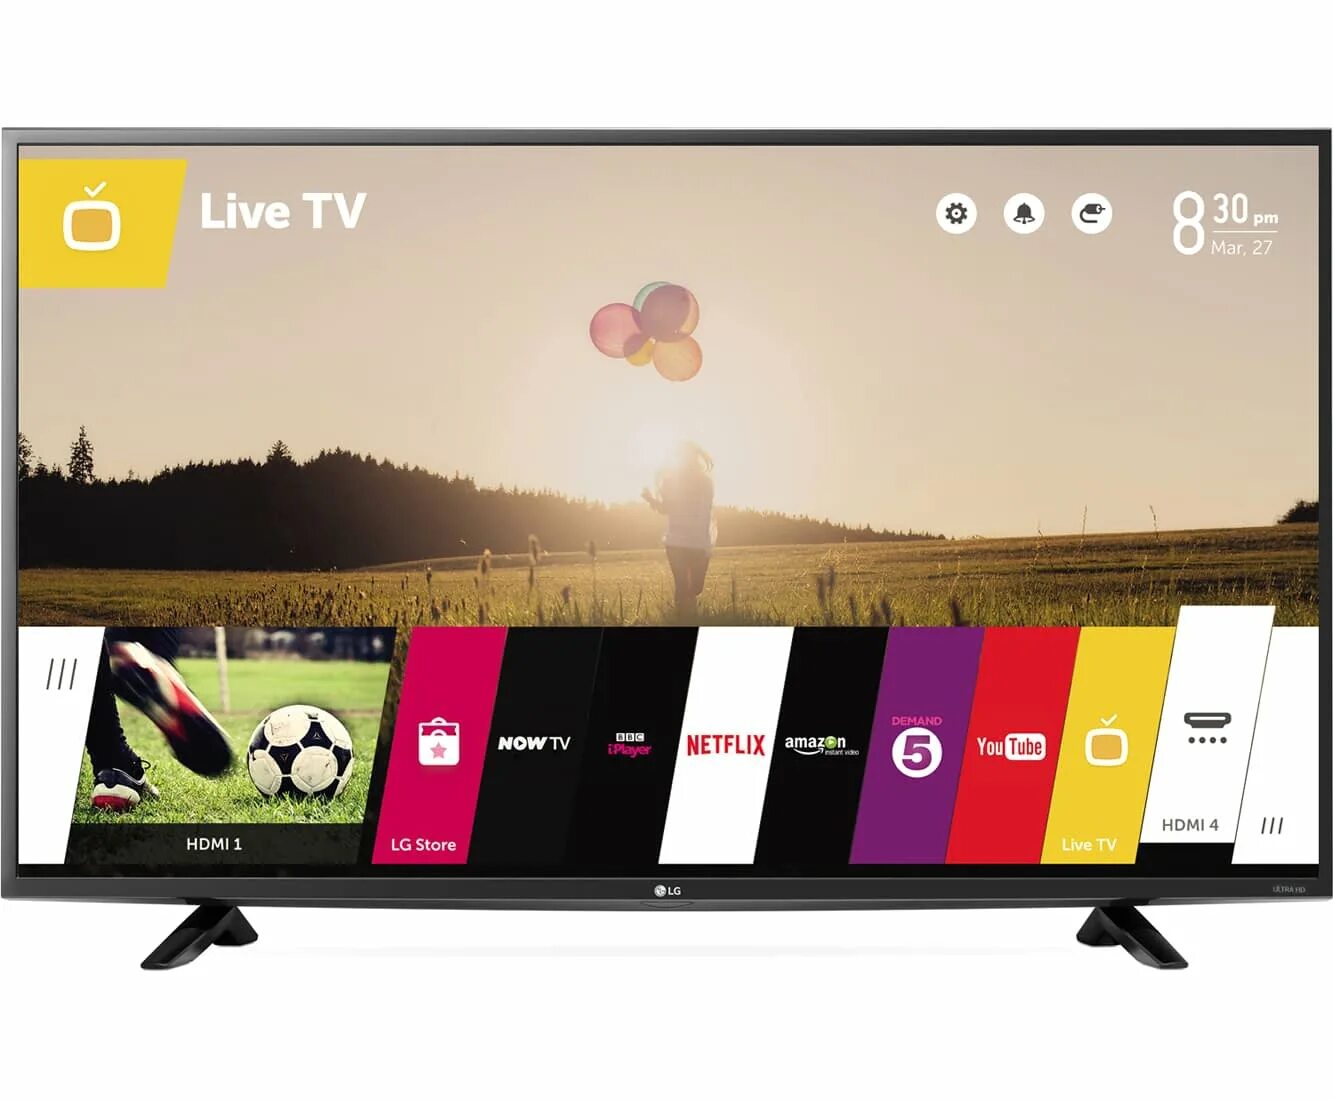 Телевизор LG 49lf630v 49" (2015). LG 43uf640v. Телевизор LG 43lf630v 43" (2015). WEBOS телевизор LG 32.